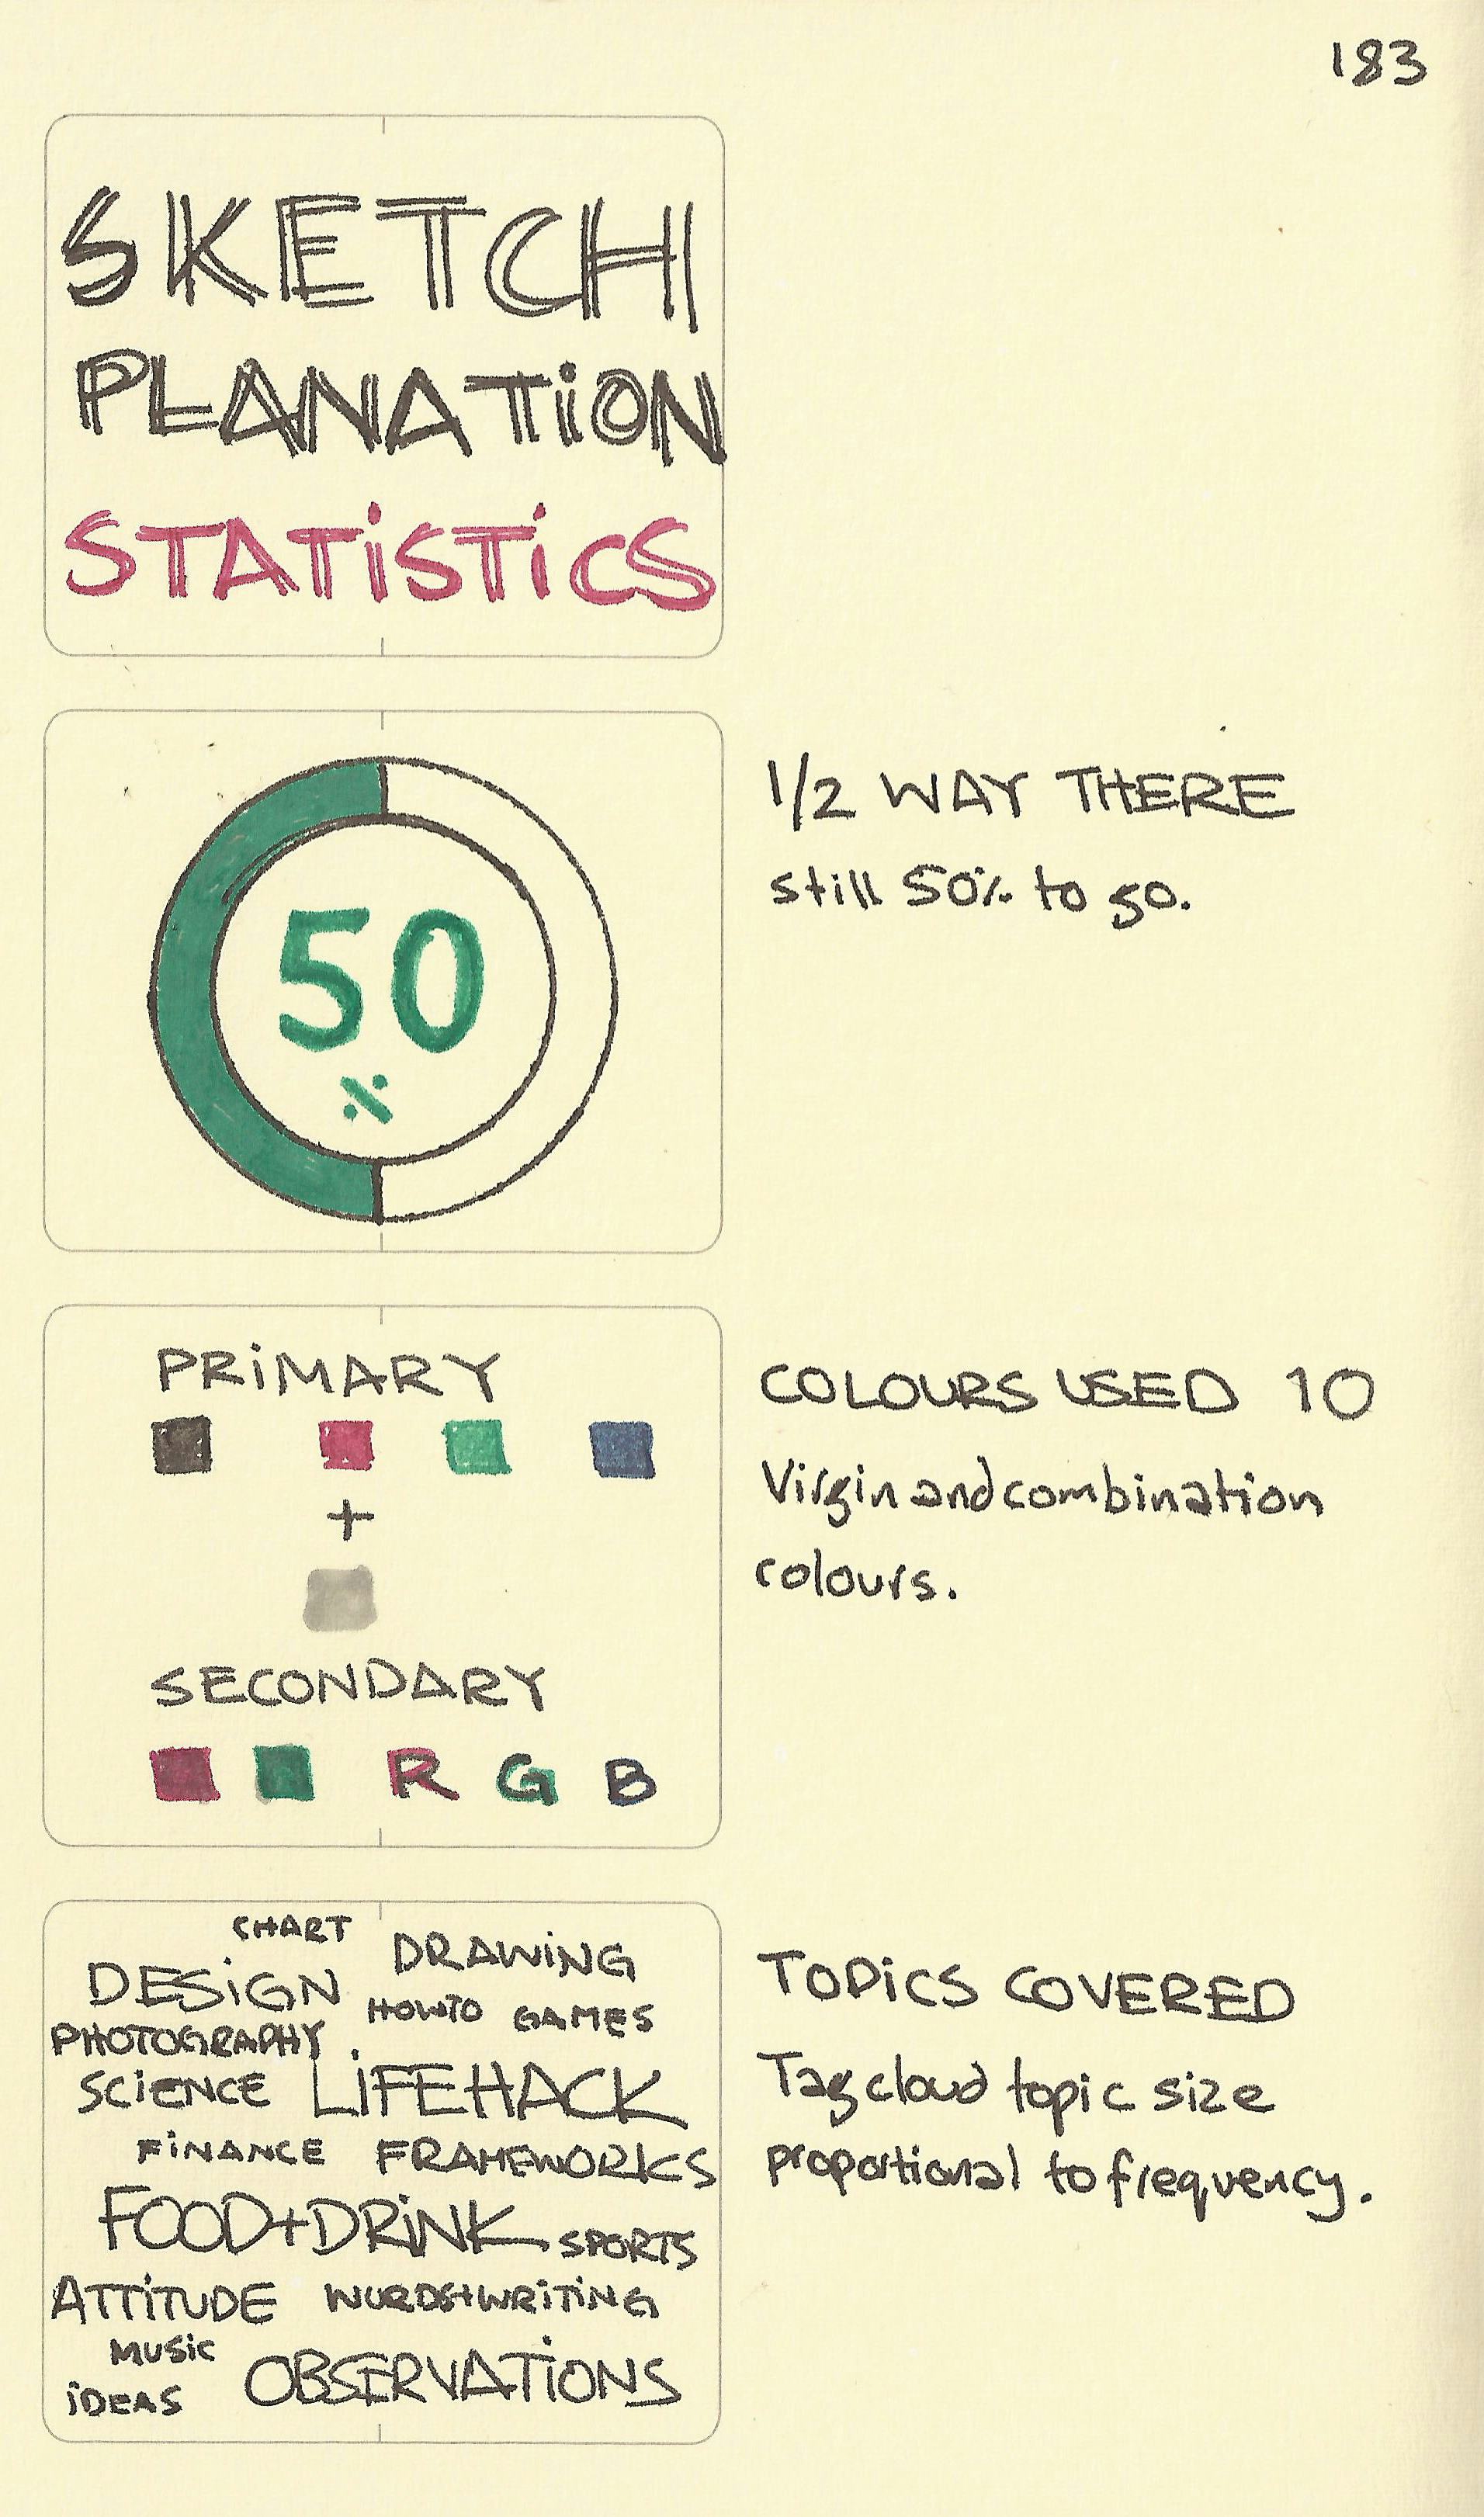 Sketchplanation statistics - Sketchplanations